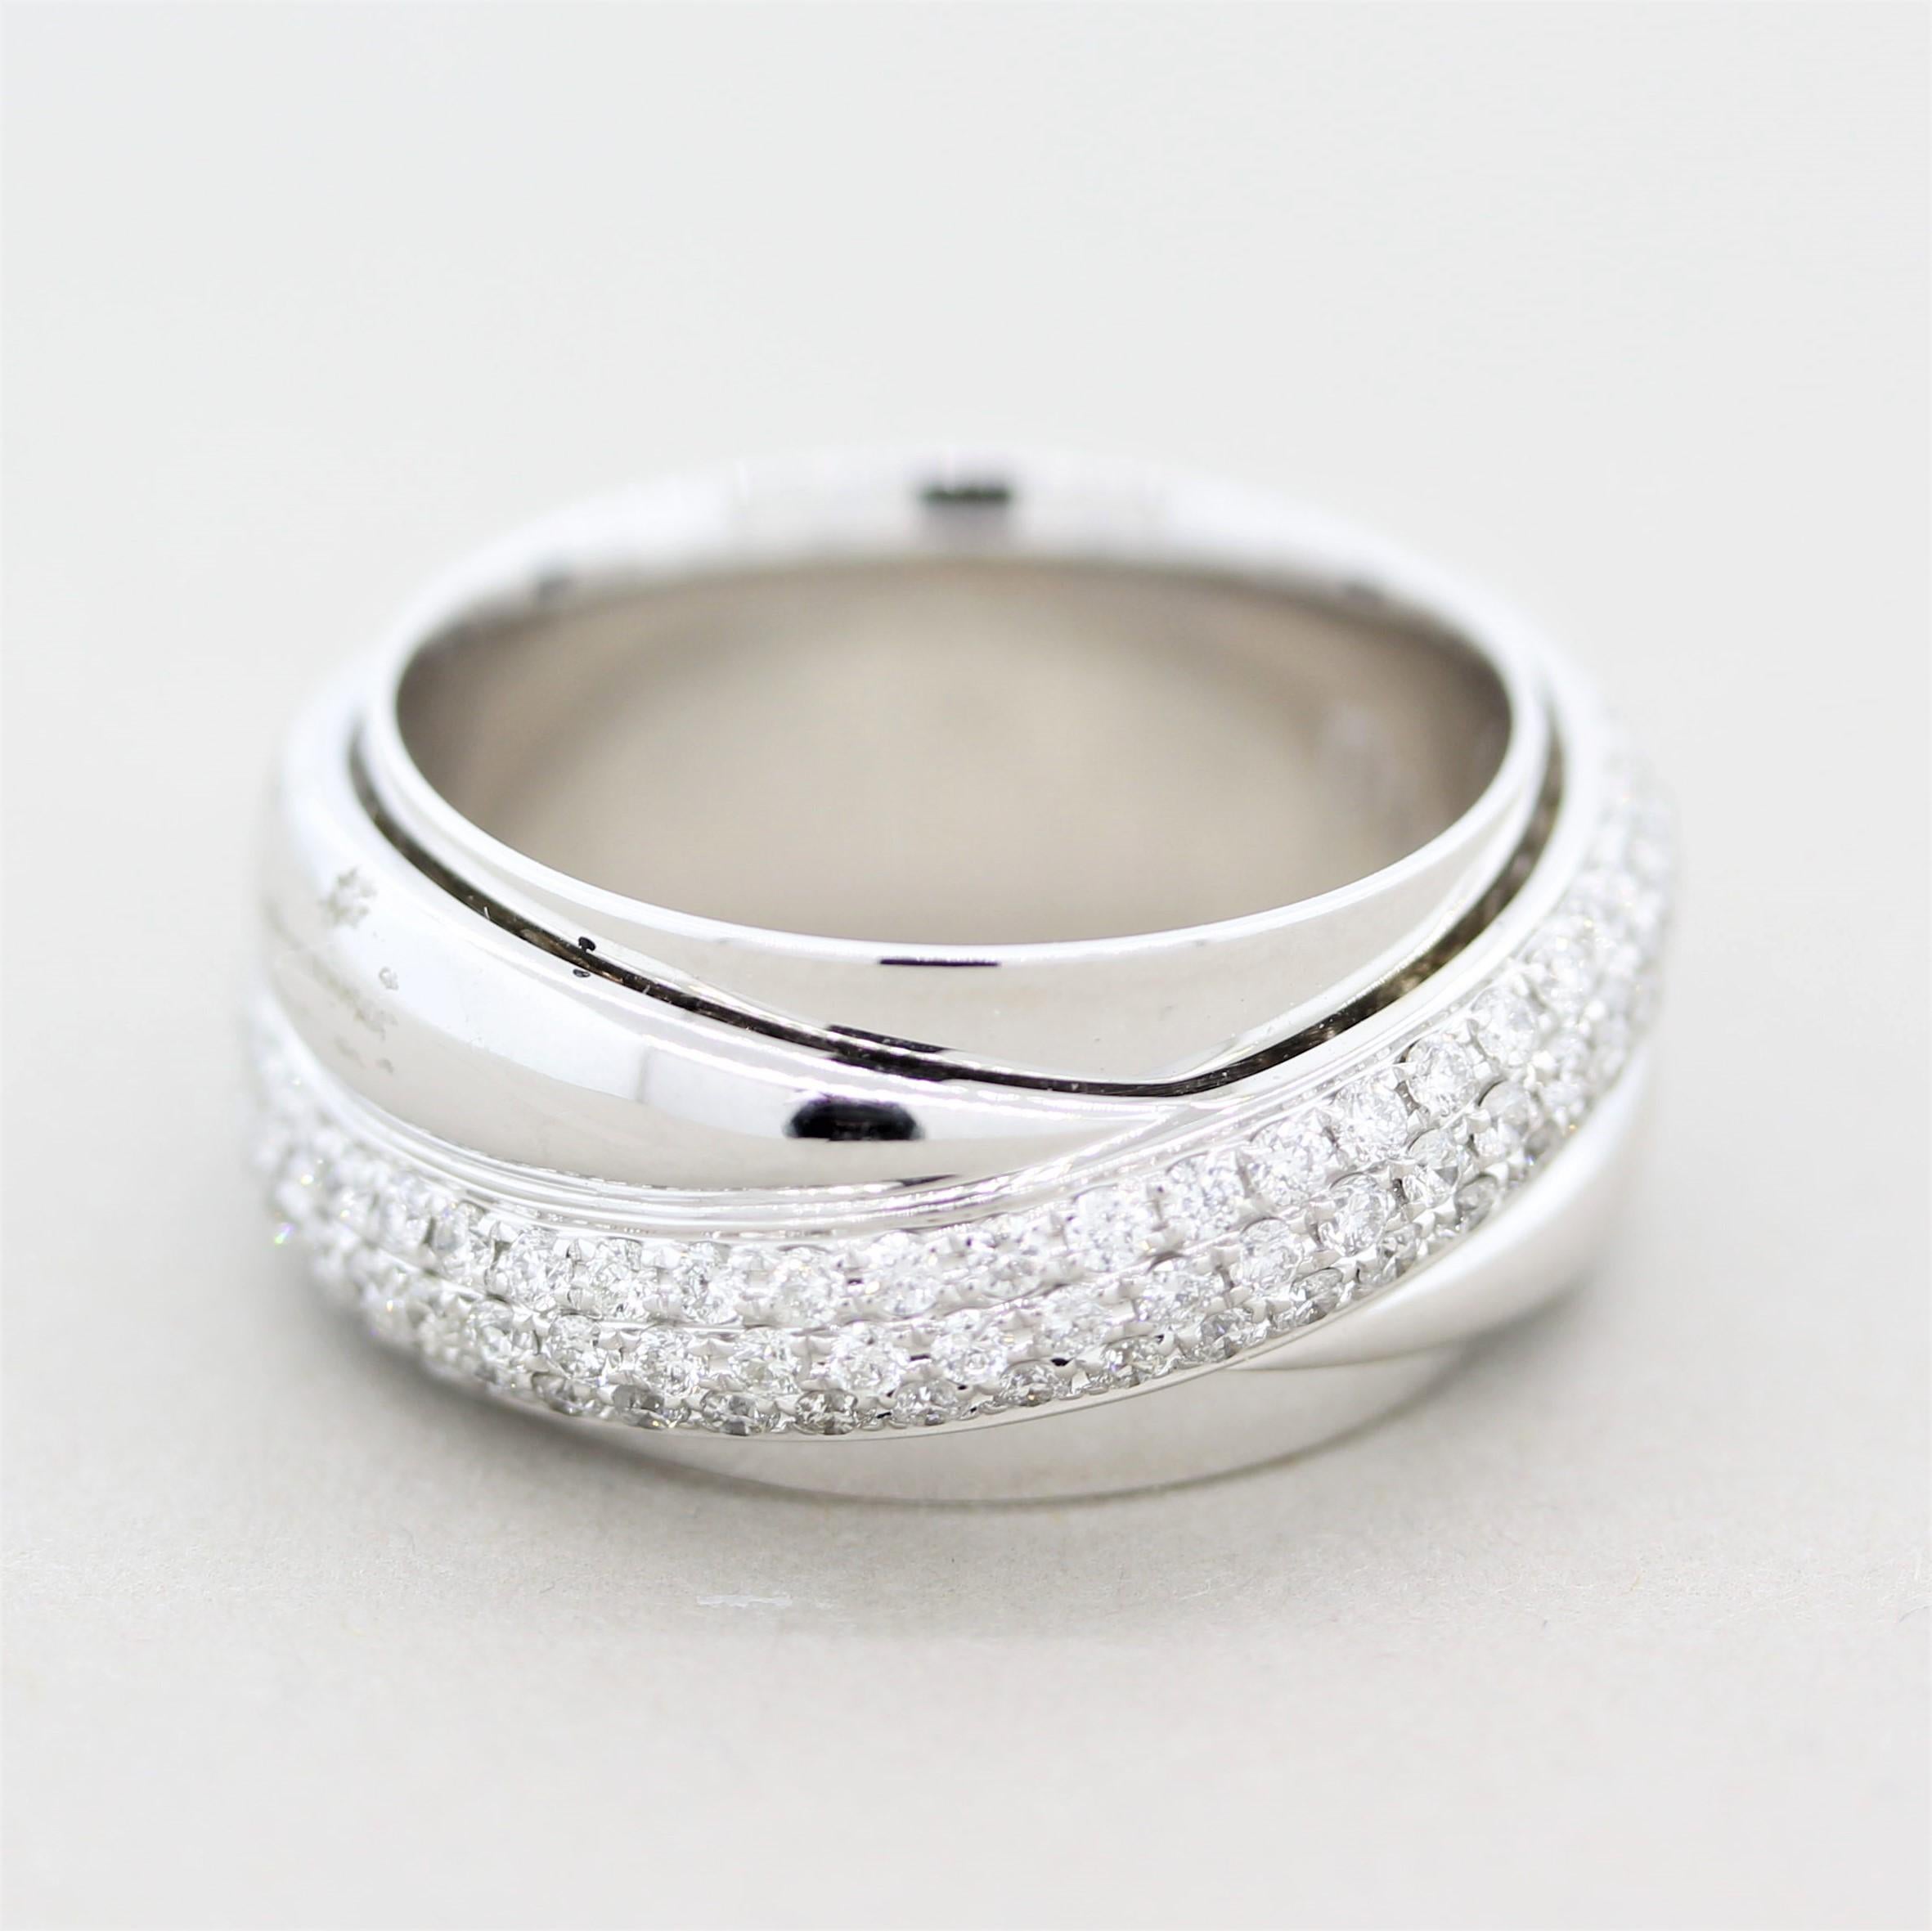 Une superbe pièce du fabricant suisse Piaget. La bague présente 1,21 carats de fins diamants ronds de taille brillant sertis sur un anneau en spirale au-dessus de l'anneau qui tourne librement autour de ce dernier. Il est réalisé en or blanc 18